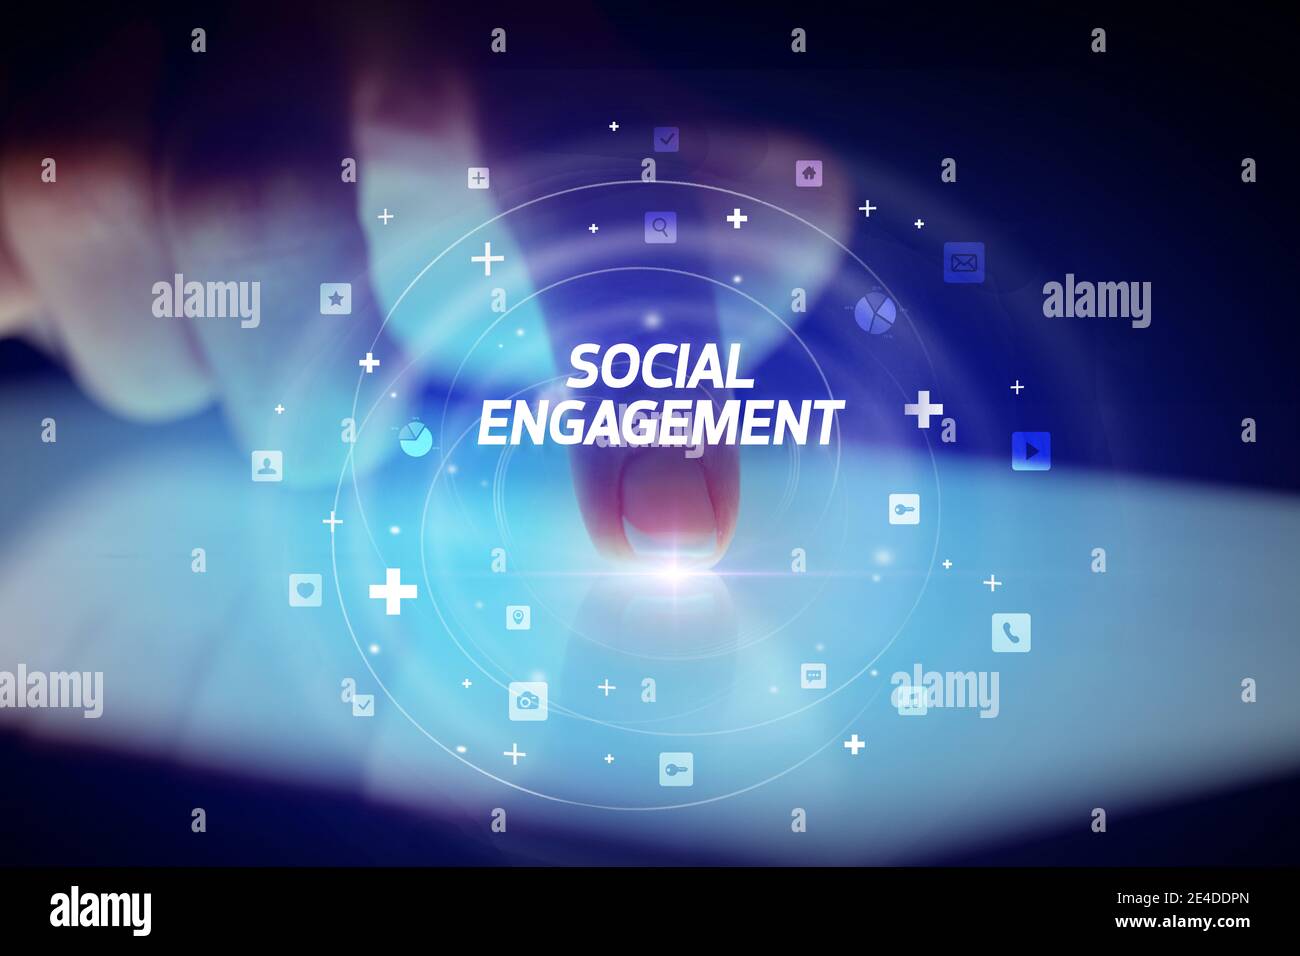 Finger touching tablet avec icônes de médias sociaux et l'engagement social Banque D'Images